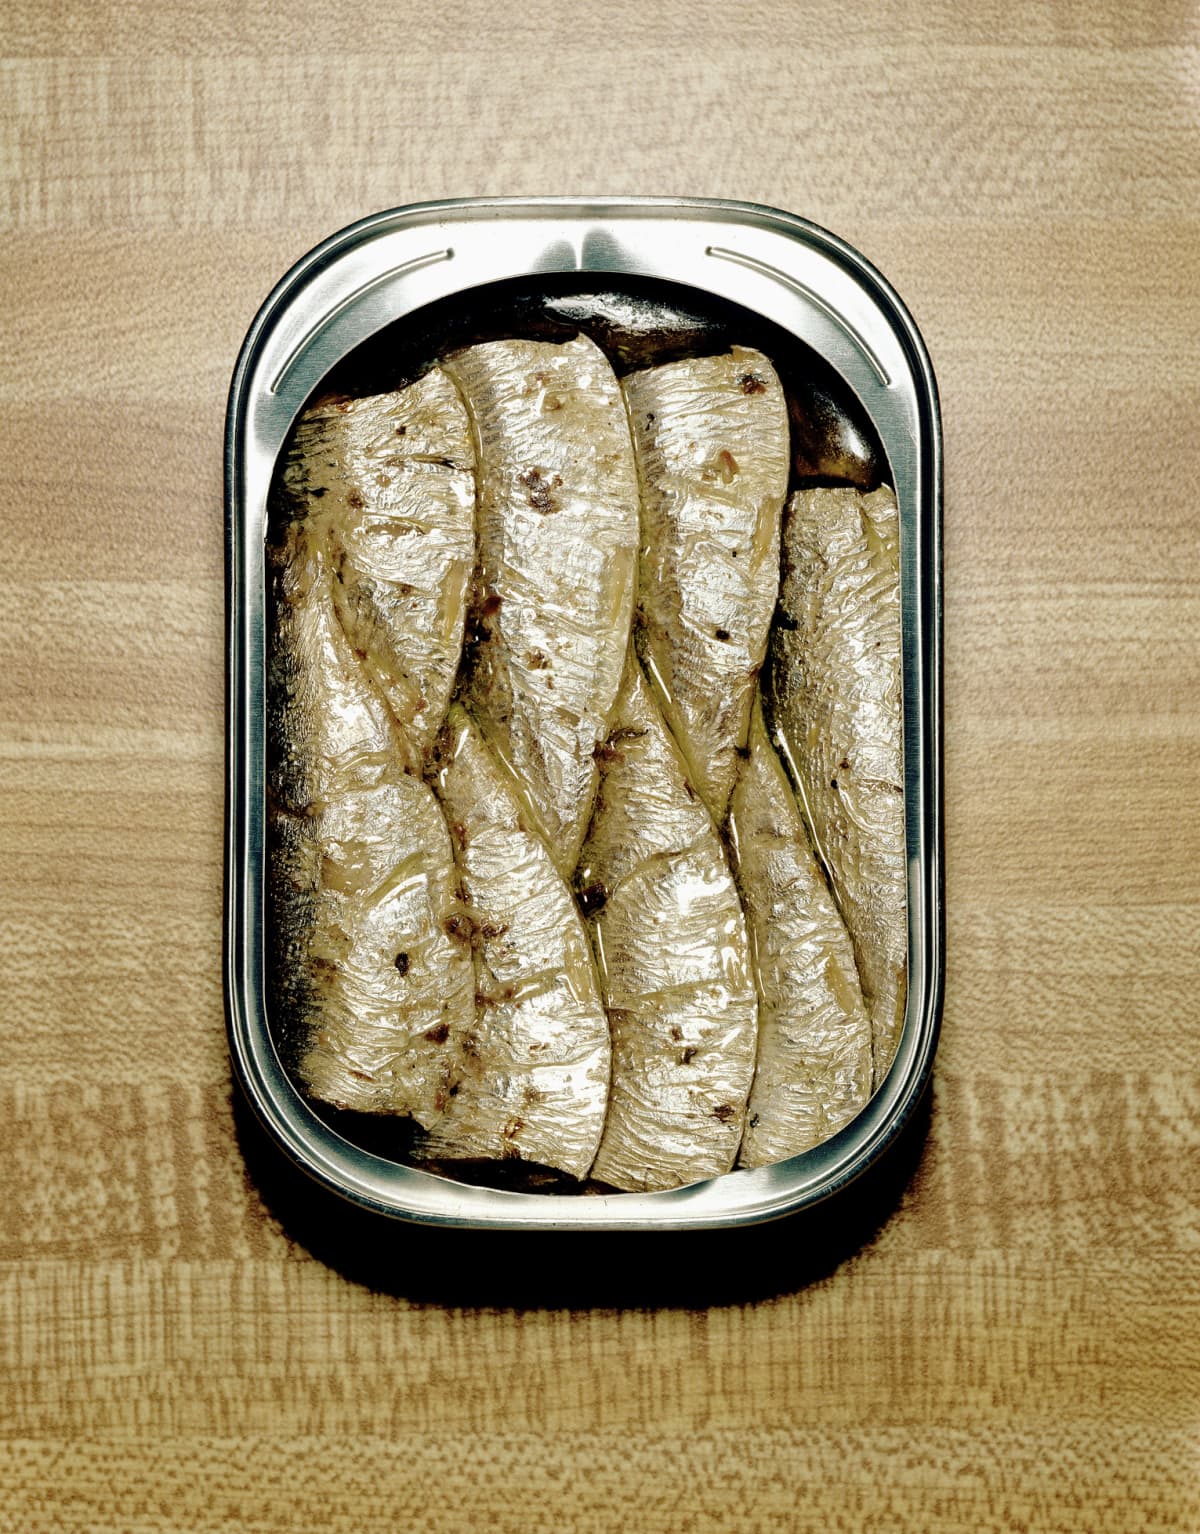 Open tin of sardines on table